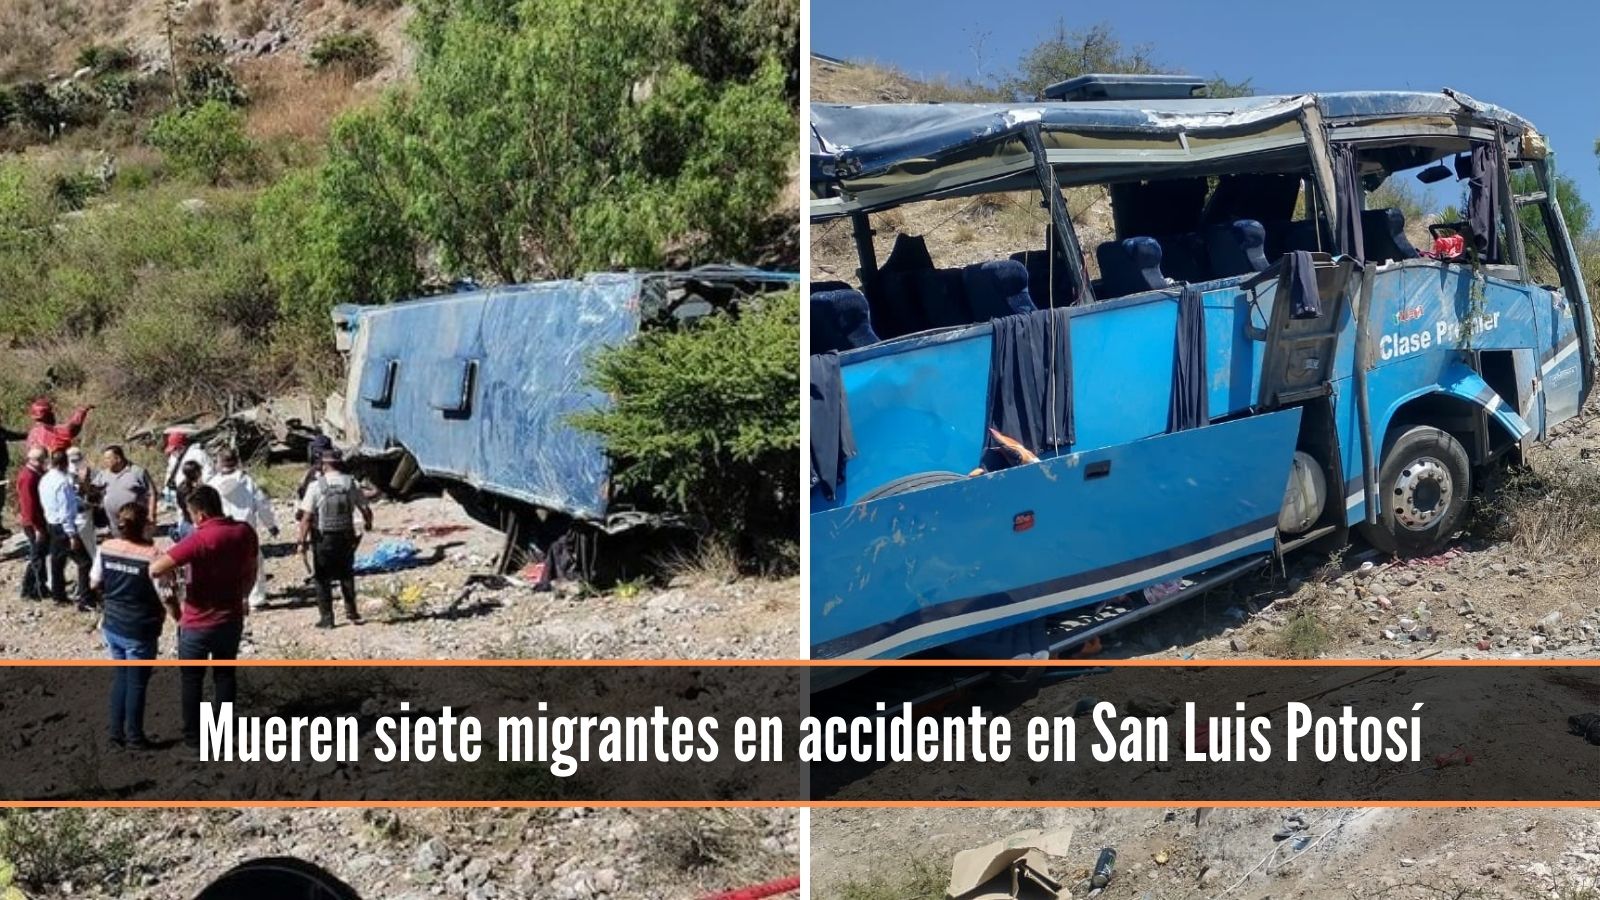 Mueren siete migrantes centroamericanos en San Luis Potosí